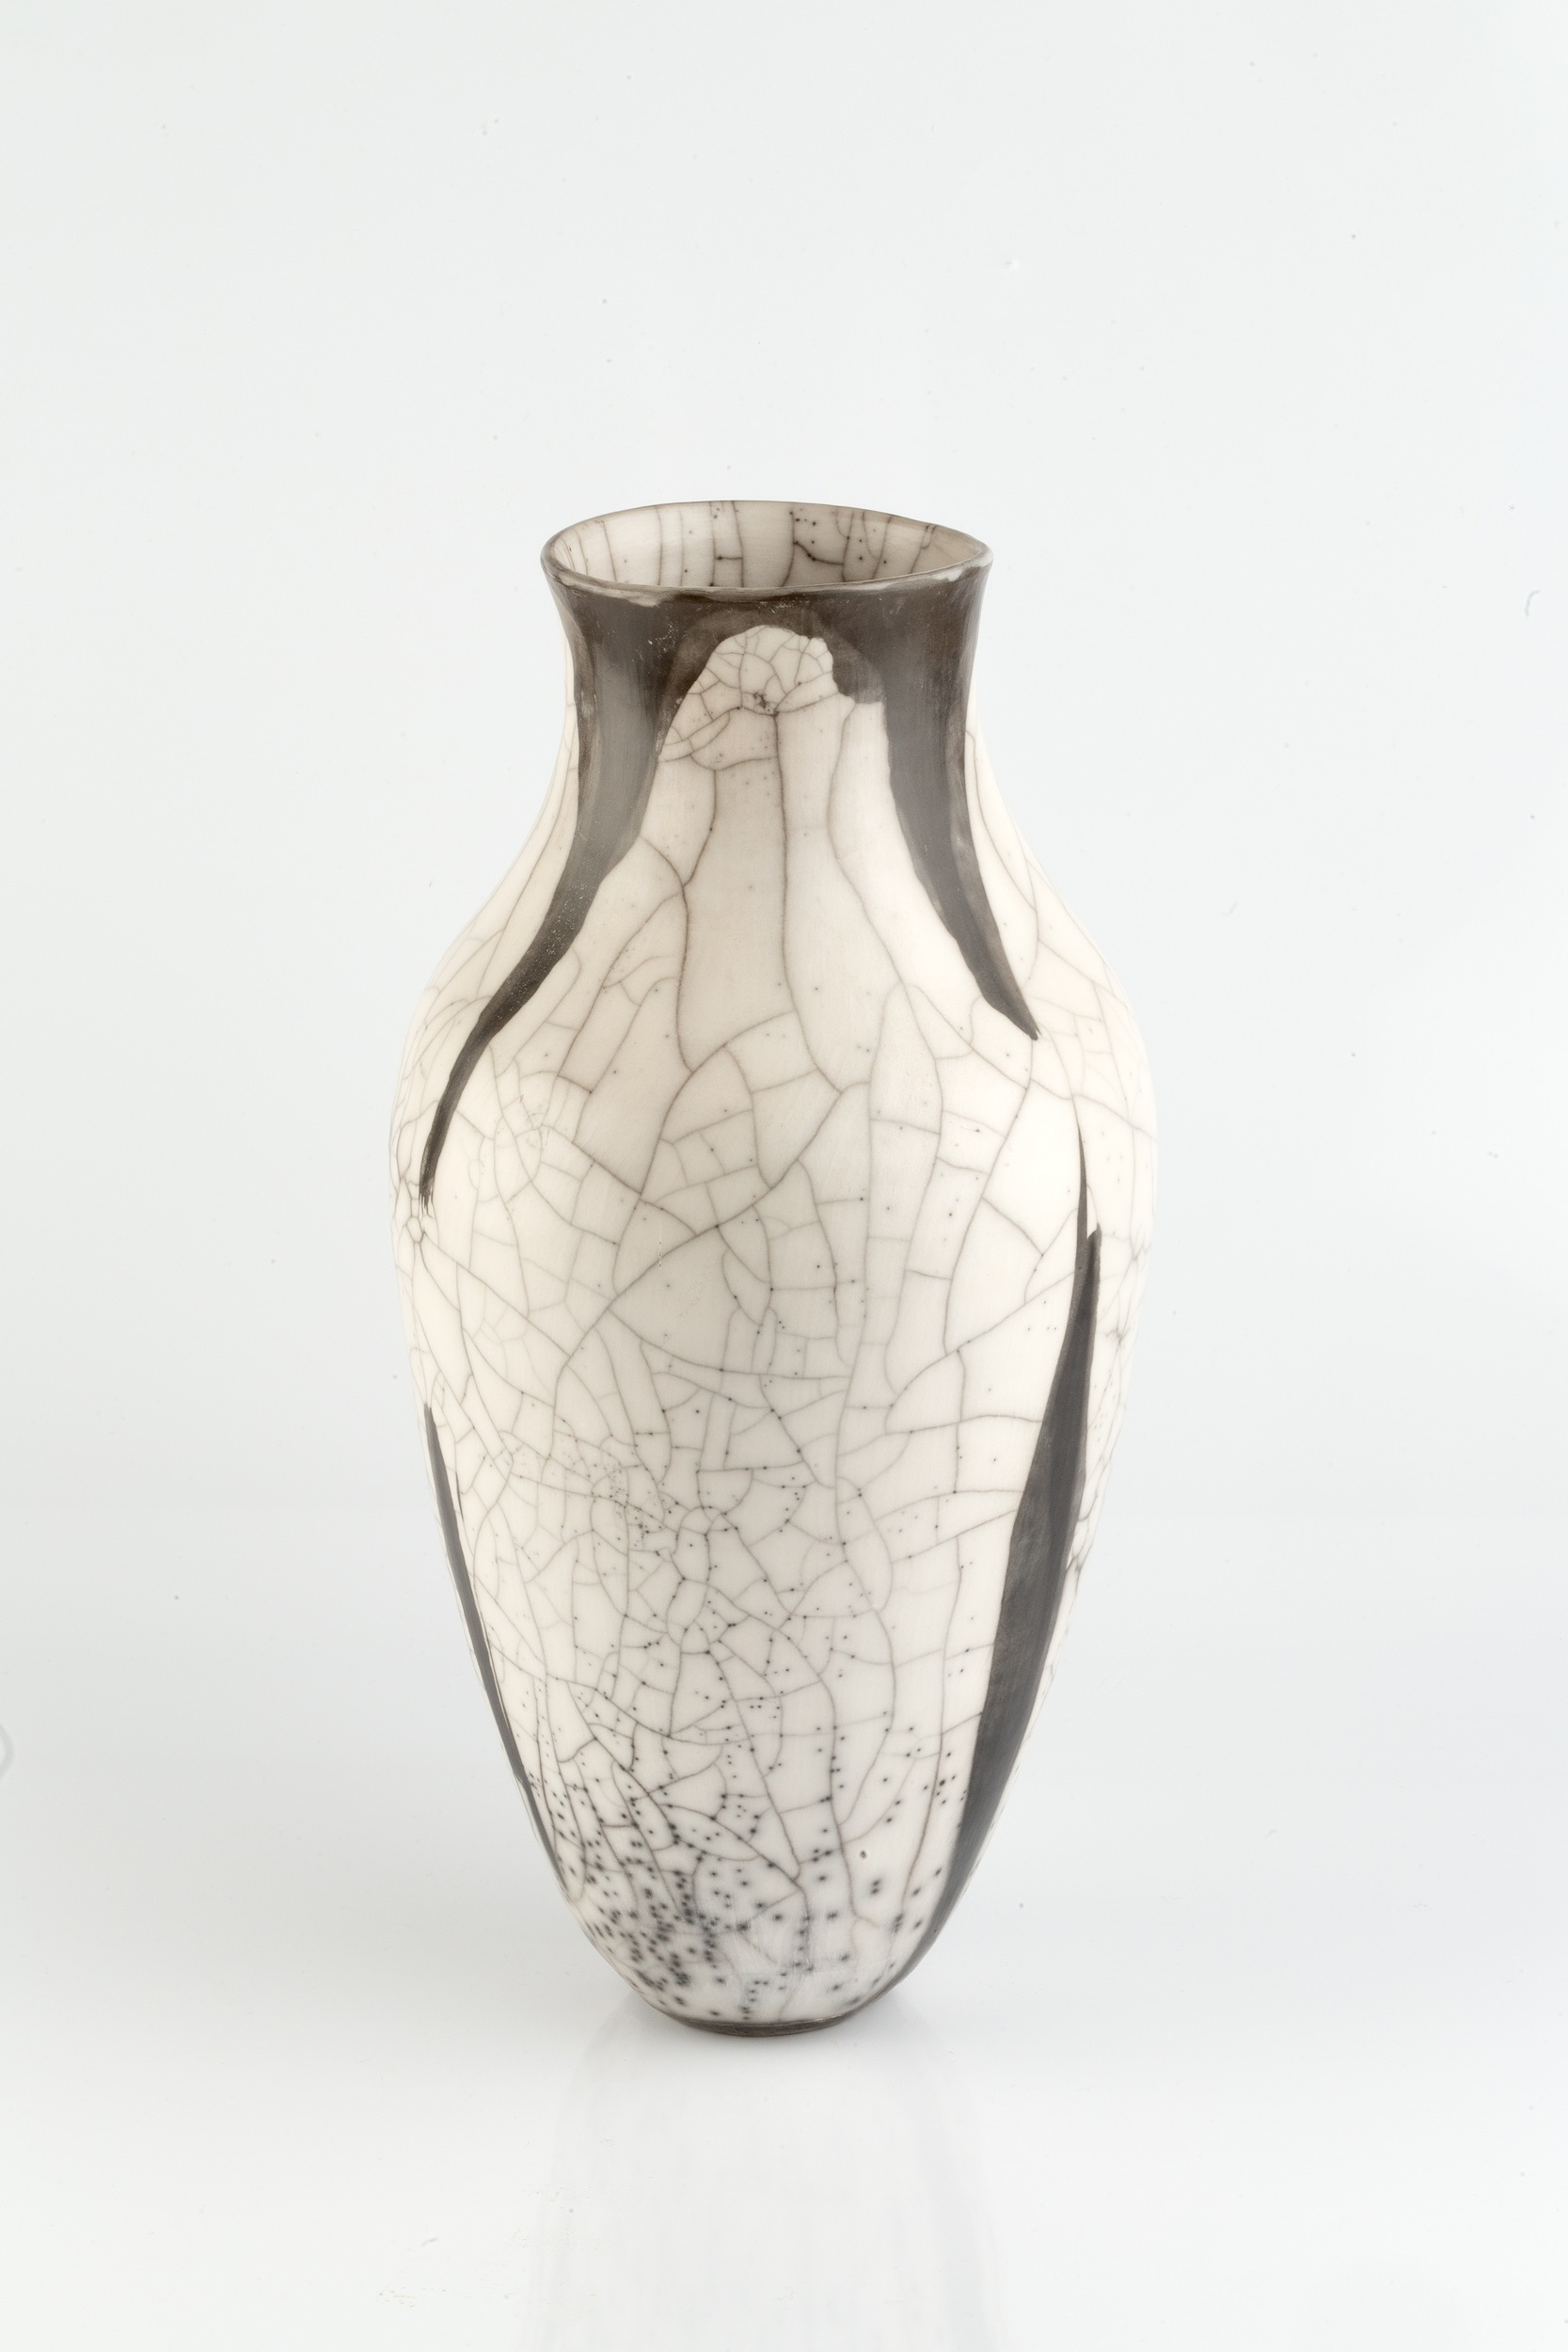 David Roberts (b.1947) Vase raku impressed potter's seal 38cm high. - Image 2 of 3